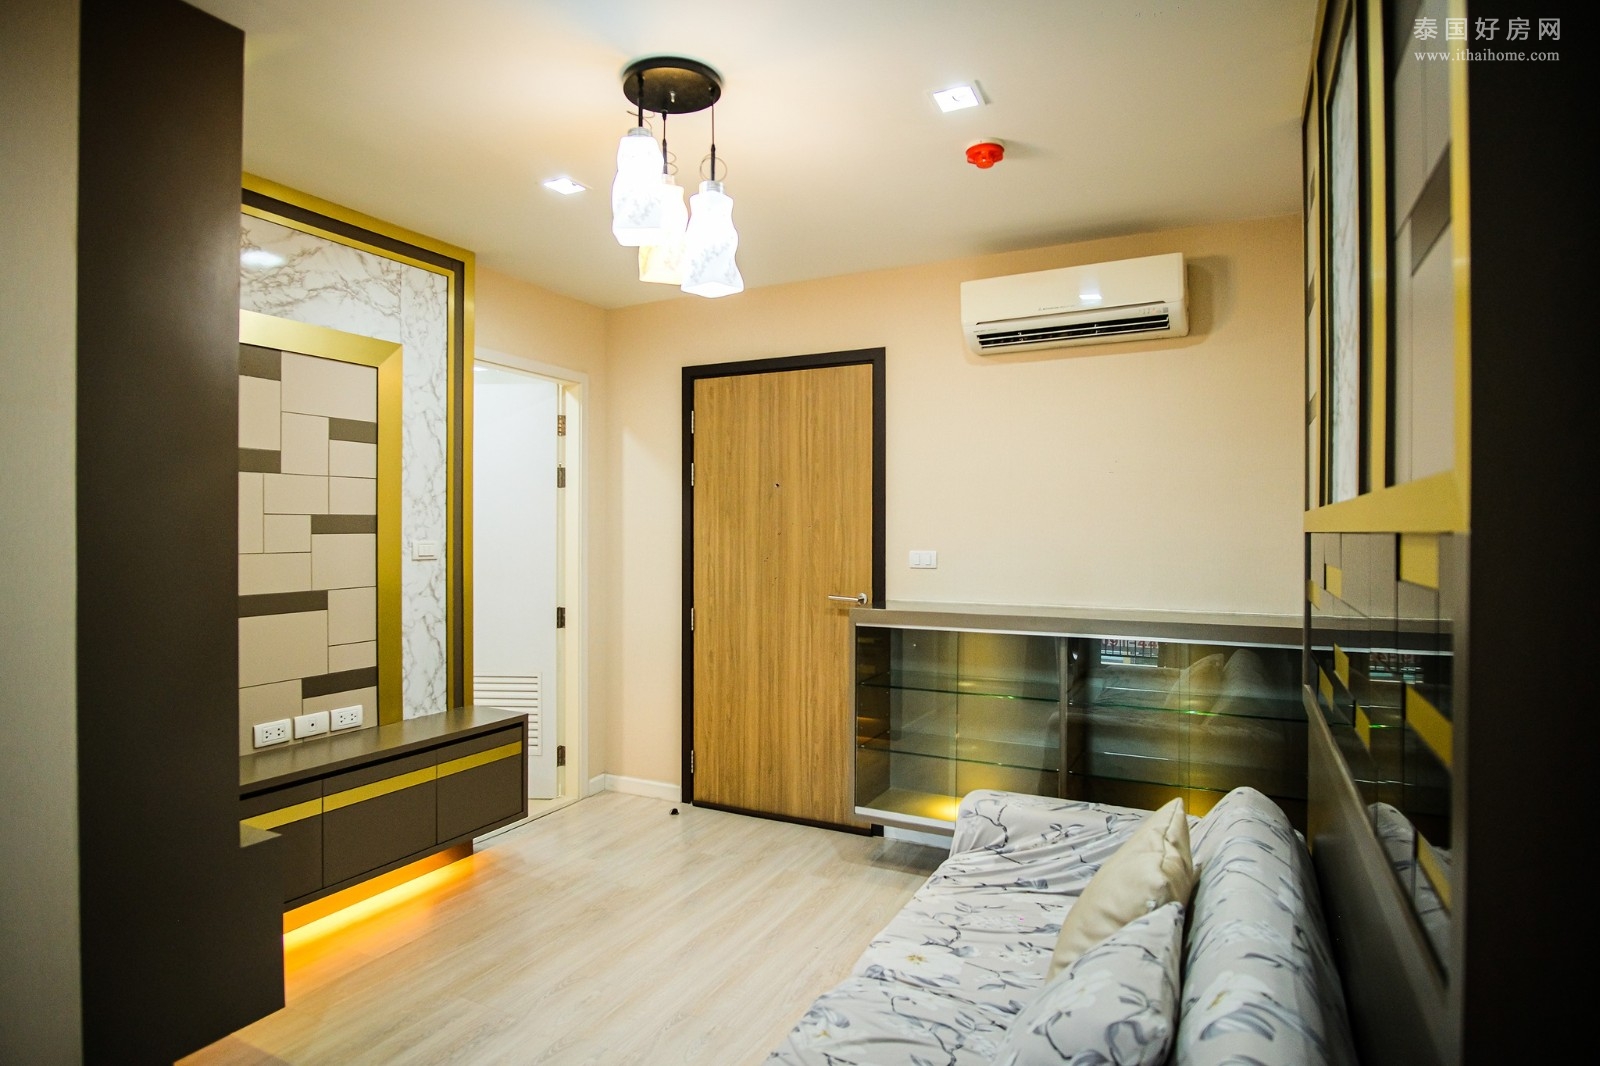 MetroLuxe Rama 4 公寓出售 1卧34平米 389万泰铢